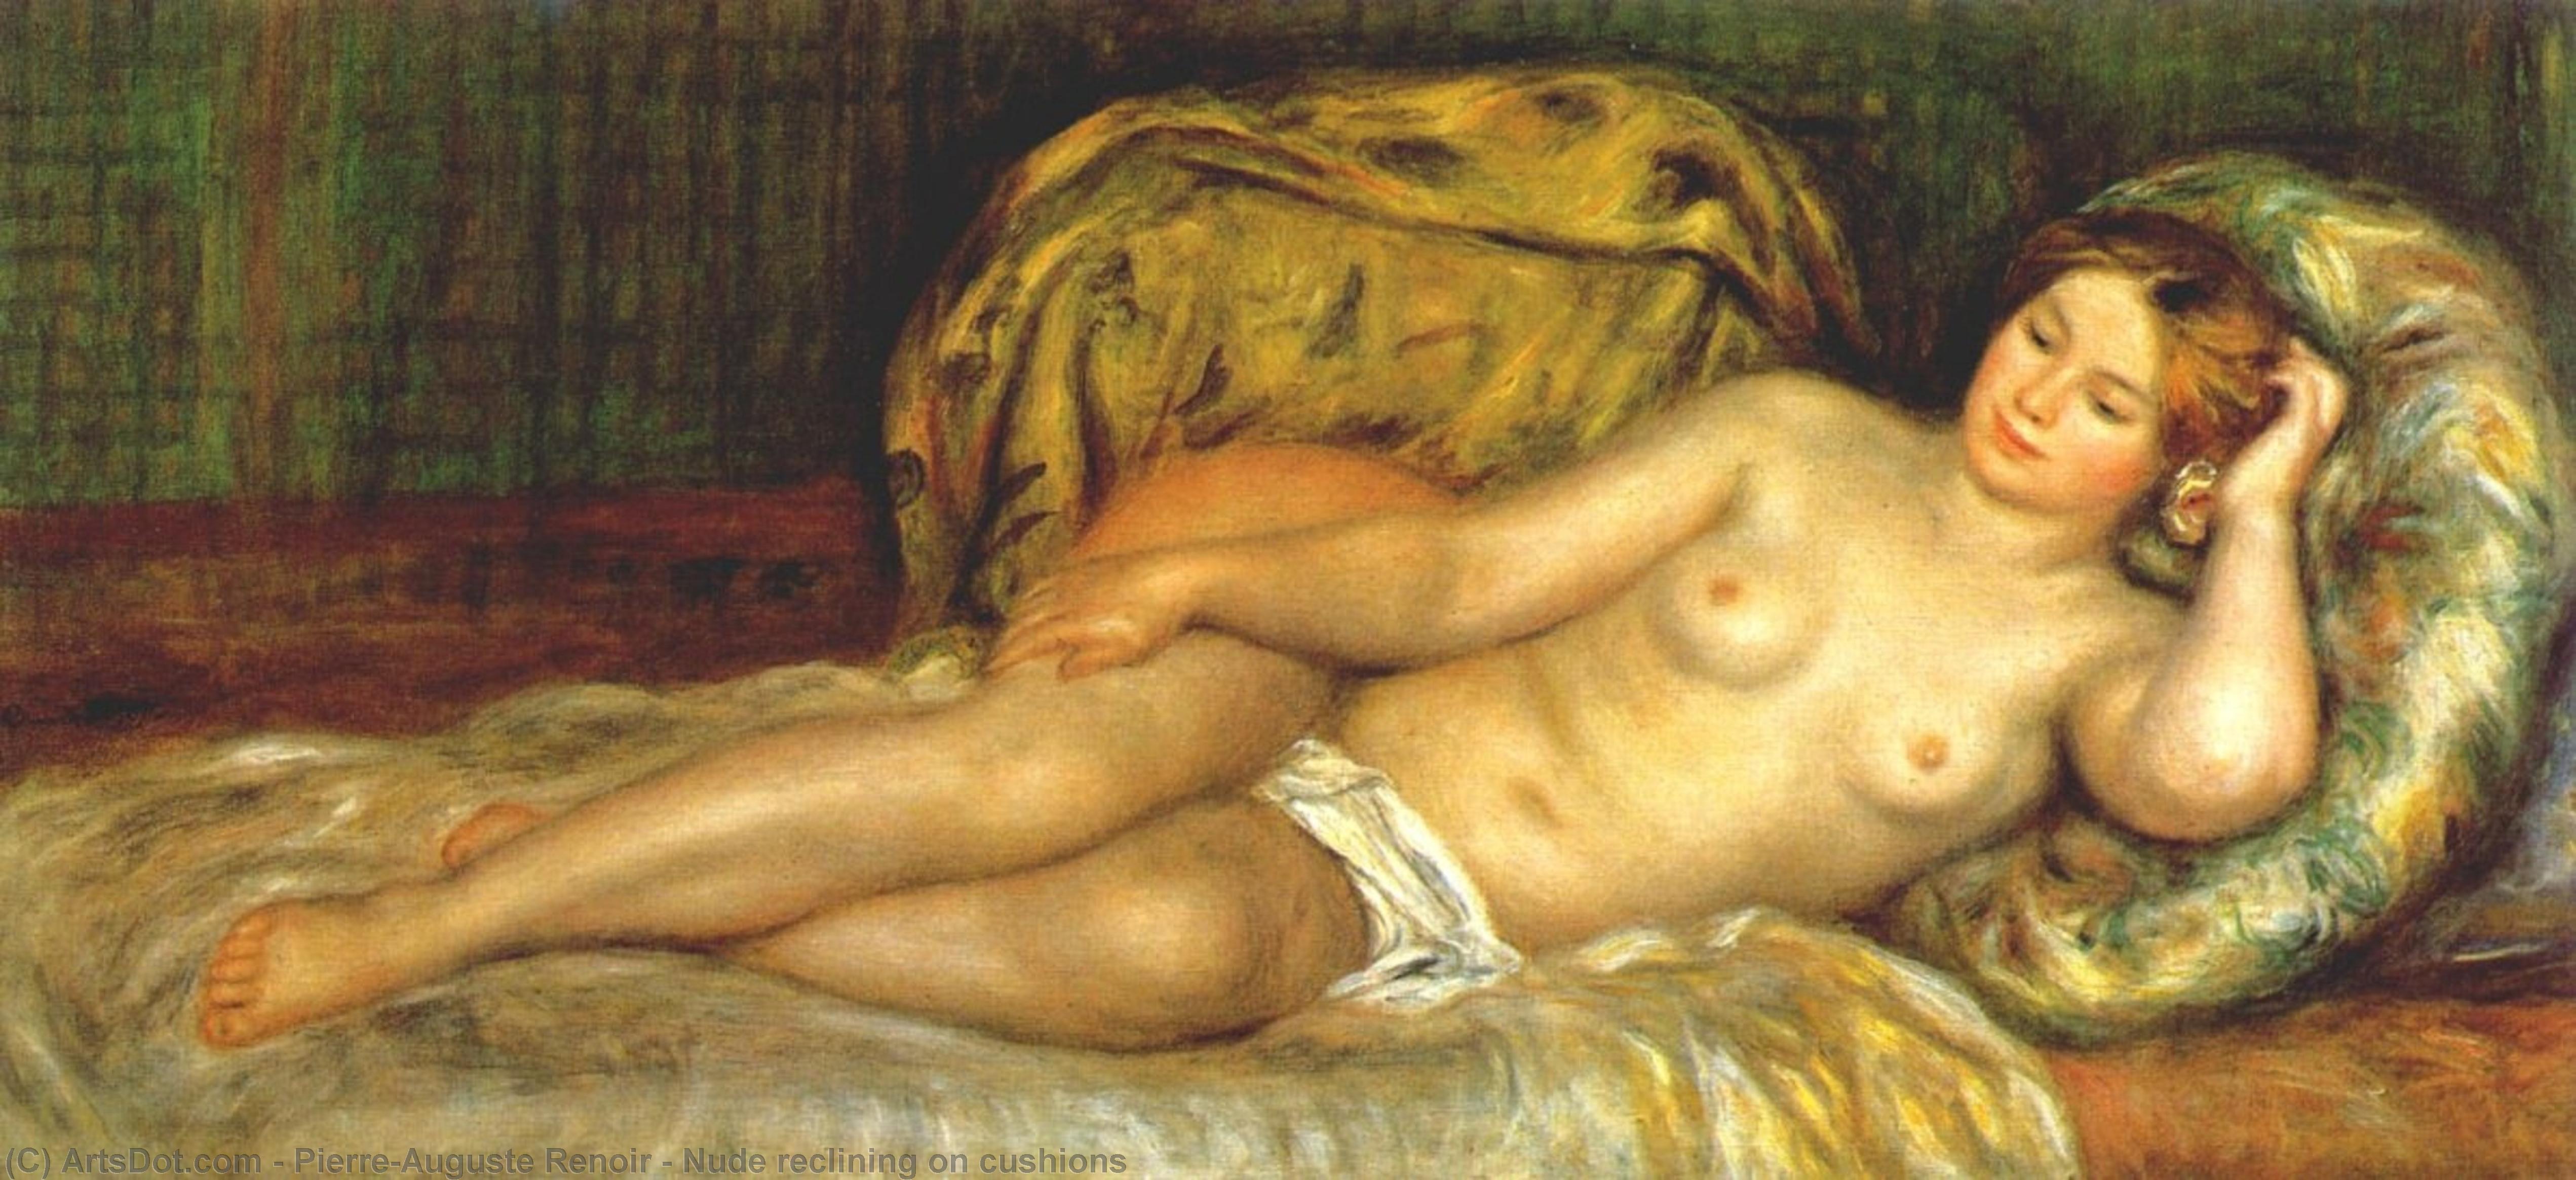 WikiOO.org - Enciclopedia of Fine Arts - Pictura, lucrări de artă Pierre-Auguste Renoir - Nude reclining on cushions